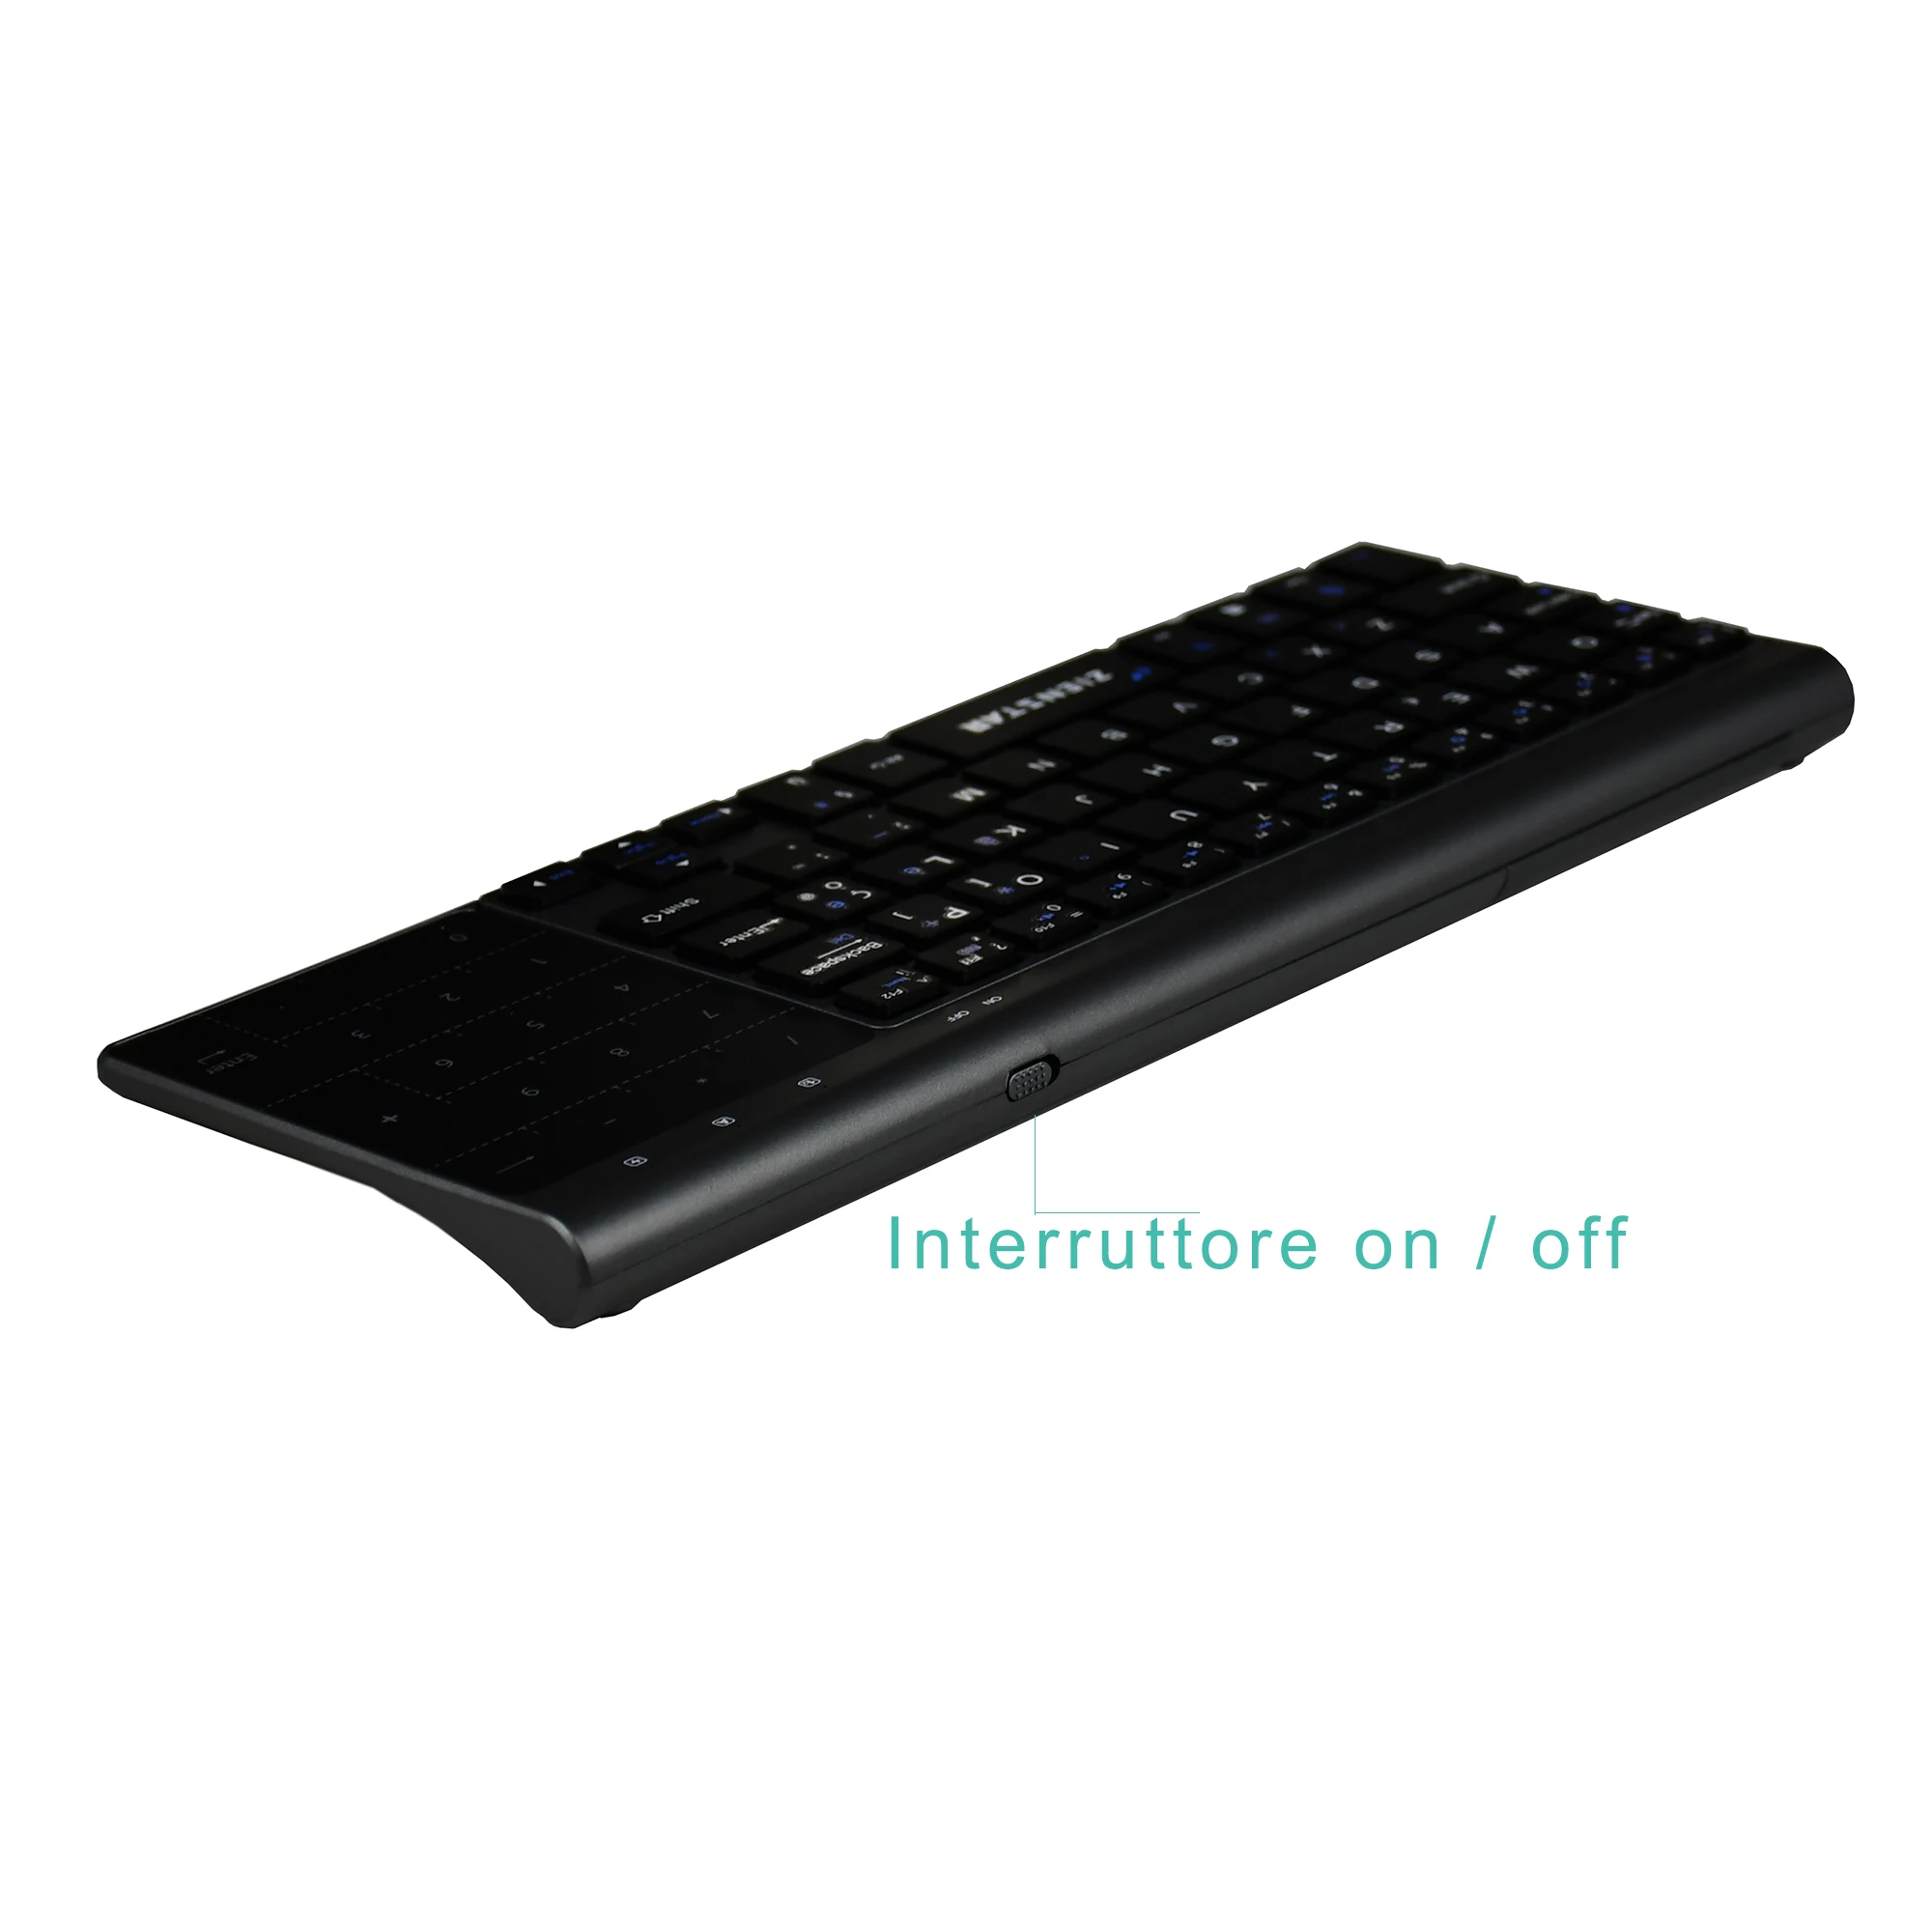 Zienstar итальянская 2,4 ГГц Беспроводная клавиатура с тачпадом и номером Pad для Windows PC, ноутбука, Ios pad, Smart tv, HTPC, Android Box